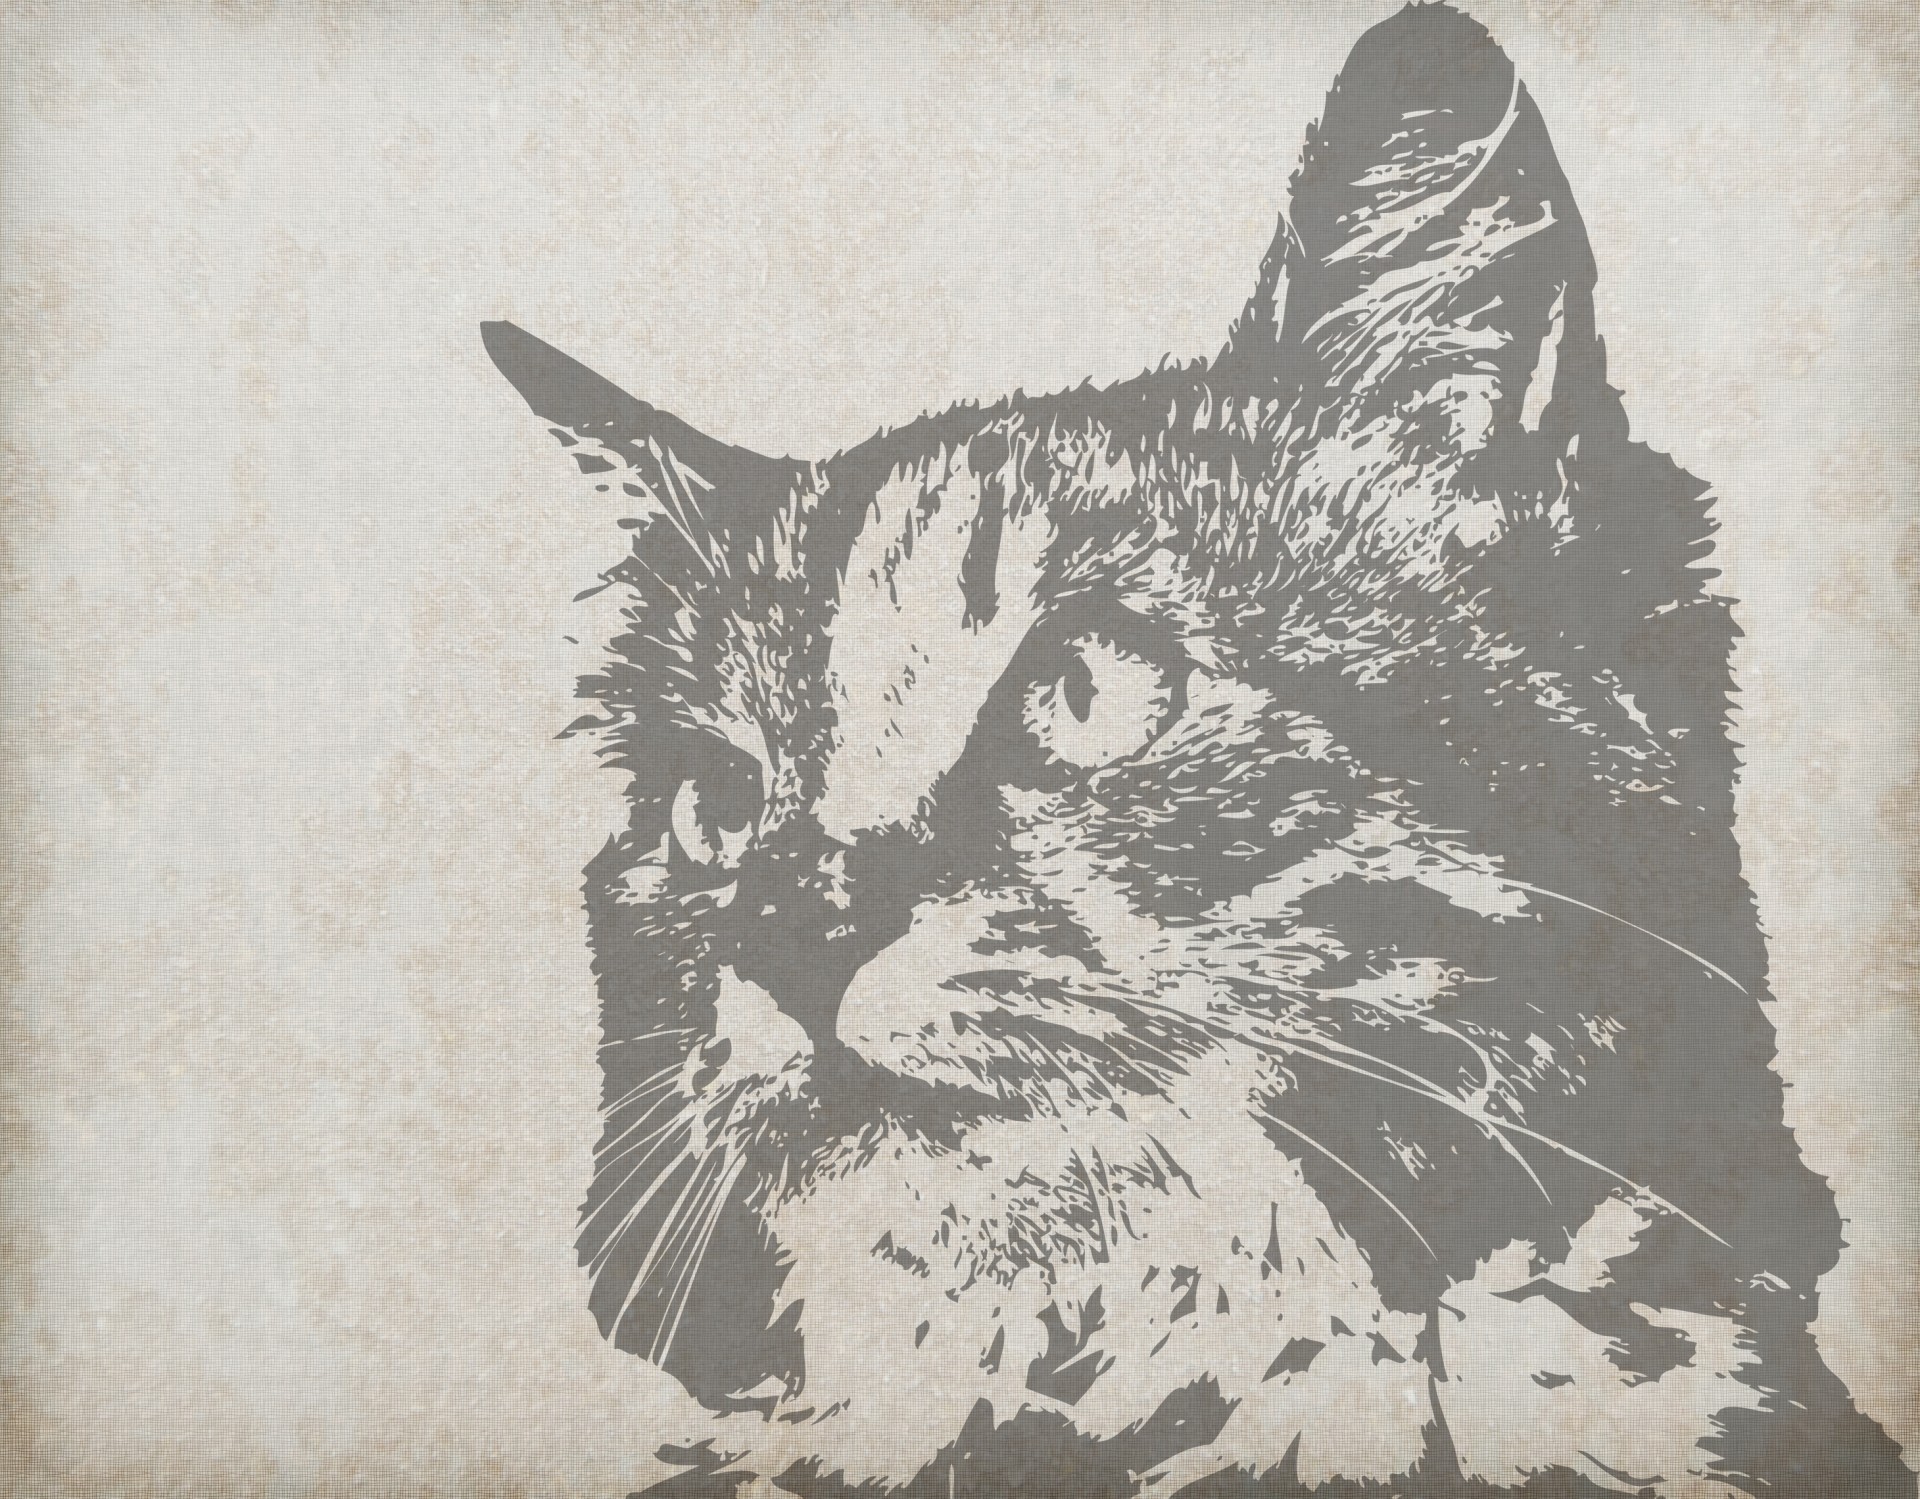 Cat Portrait Vintage Background